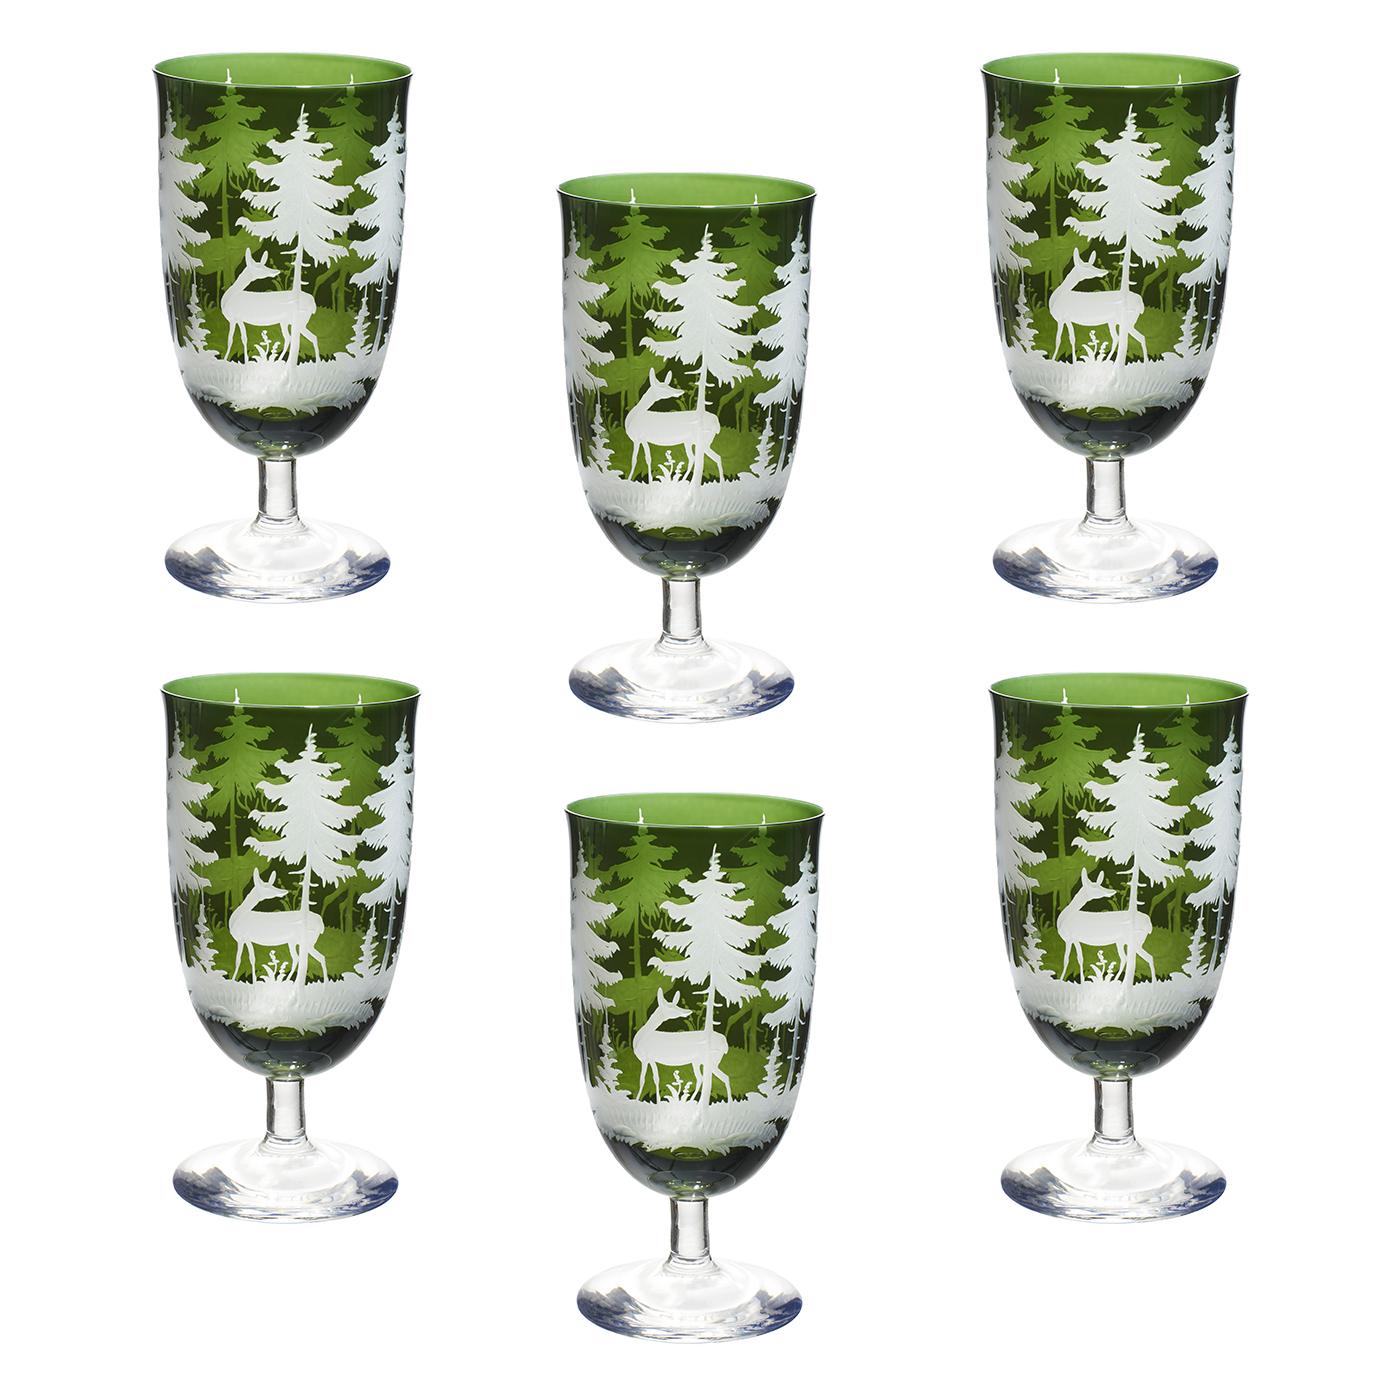 Satz von sechs mundgeblasenen Weinbechern in grünem Kristall mit antikem Jagddekor rundum. Das charmante handgravierte Dekor zeigt Rehe und Bäume im Stil des Schwarzwaldes. Der Sockel ist in klarem Kristall und der Kelch ist in grün. Die Gläser